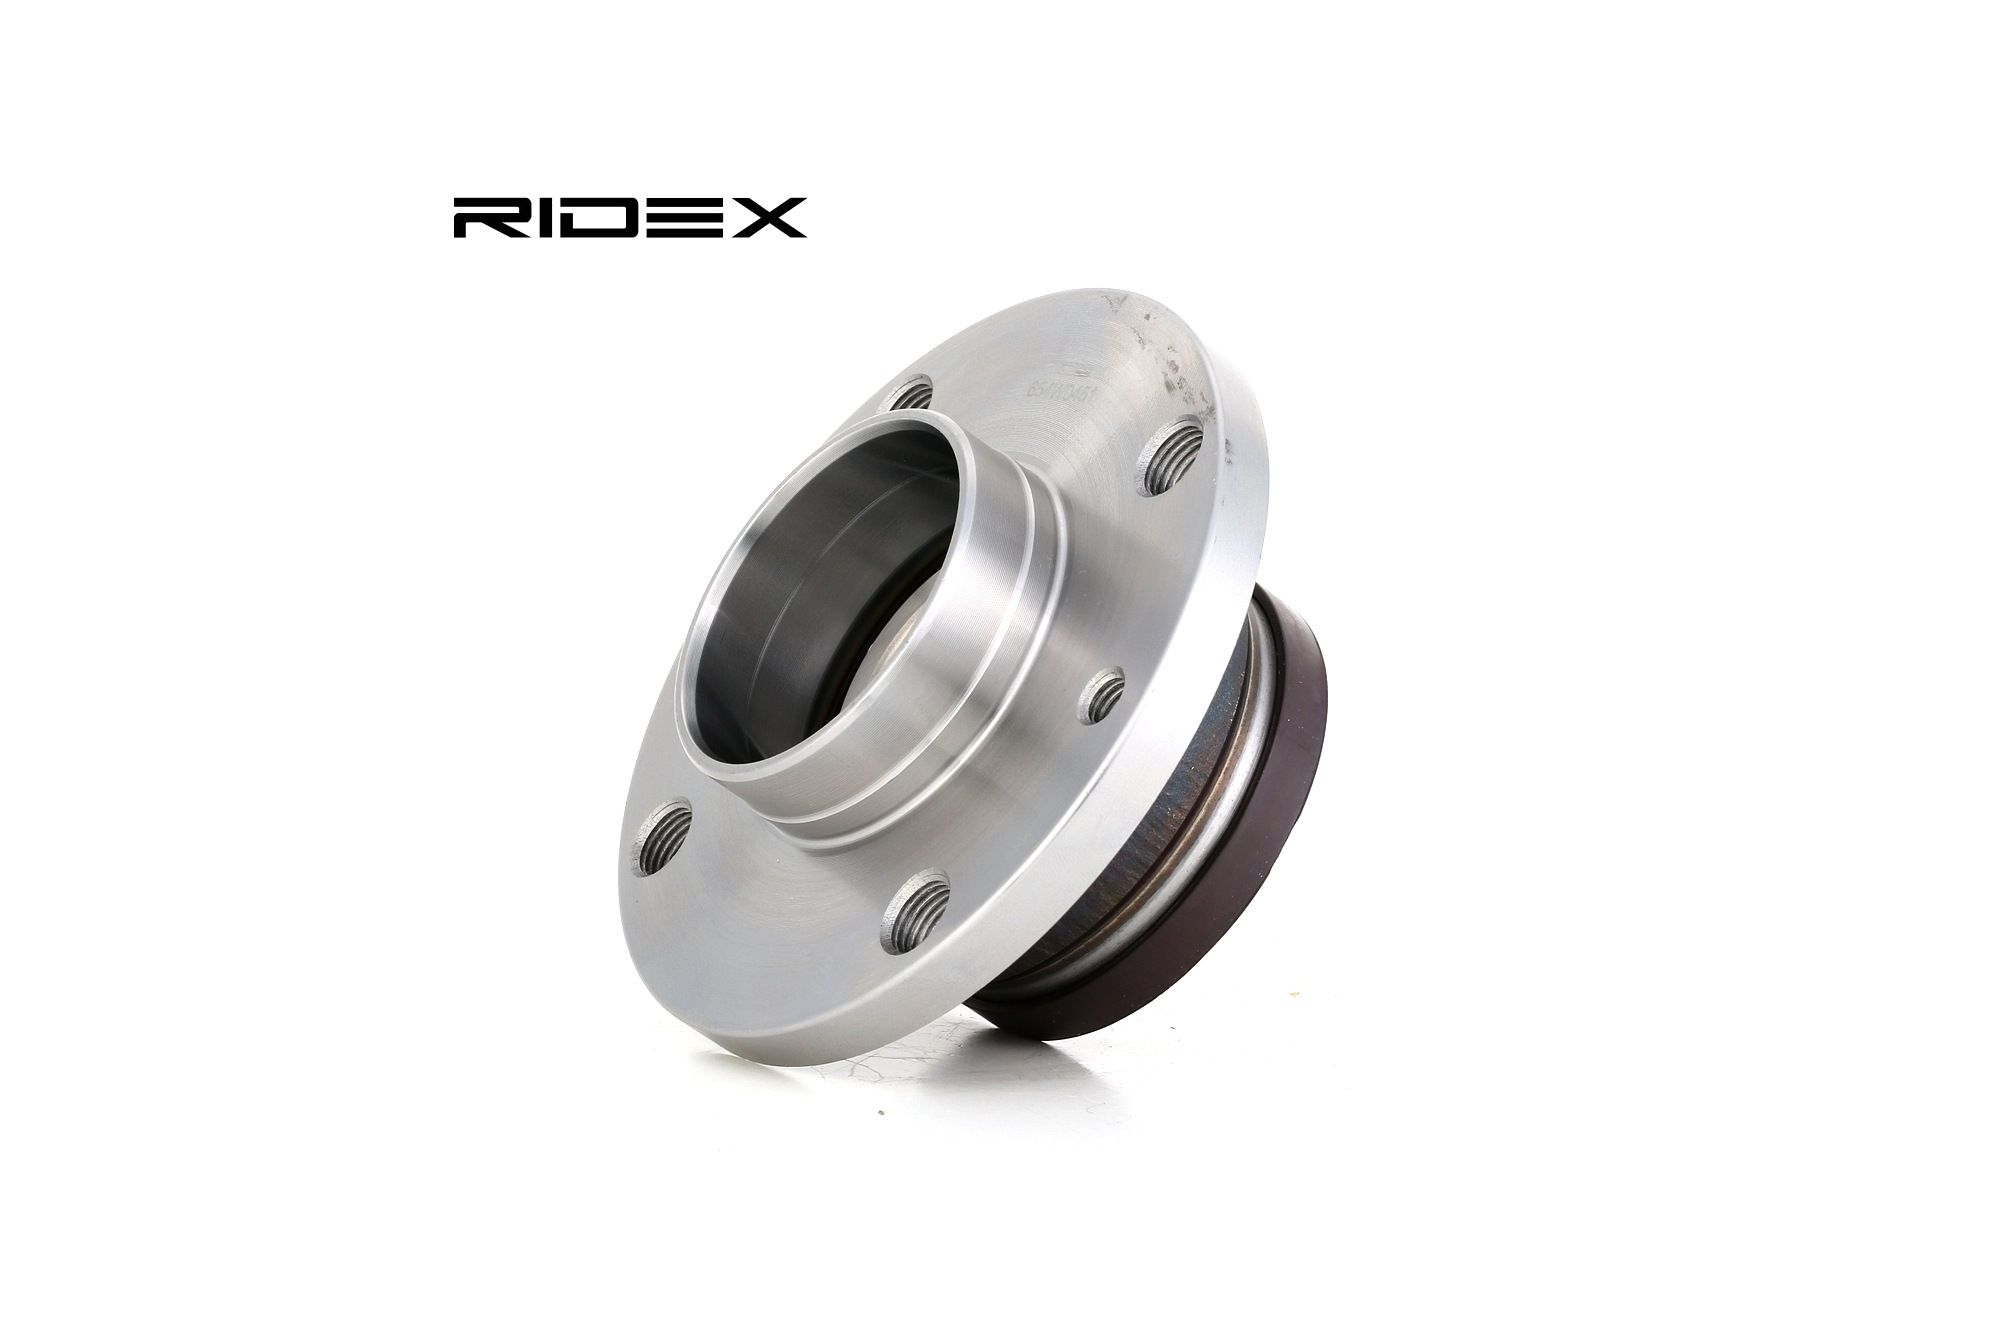 RIDEX 654W0451 Cuscinetto ruota con mozzo portaruota, con anello sensore magnetico integrato, 117 mm